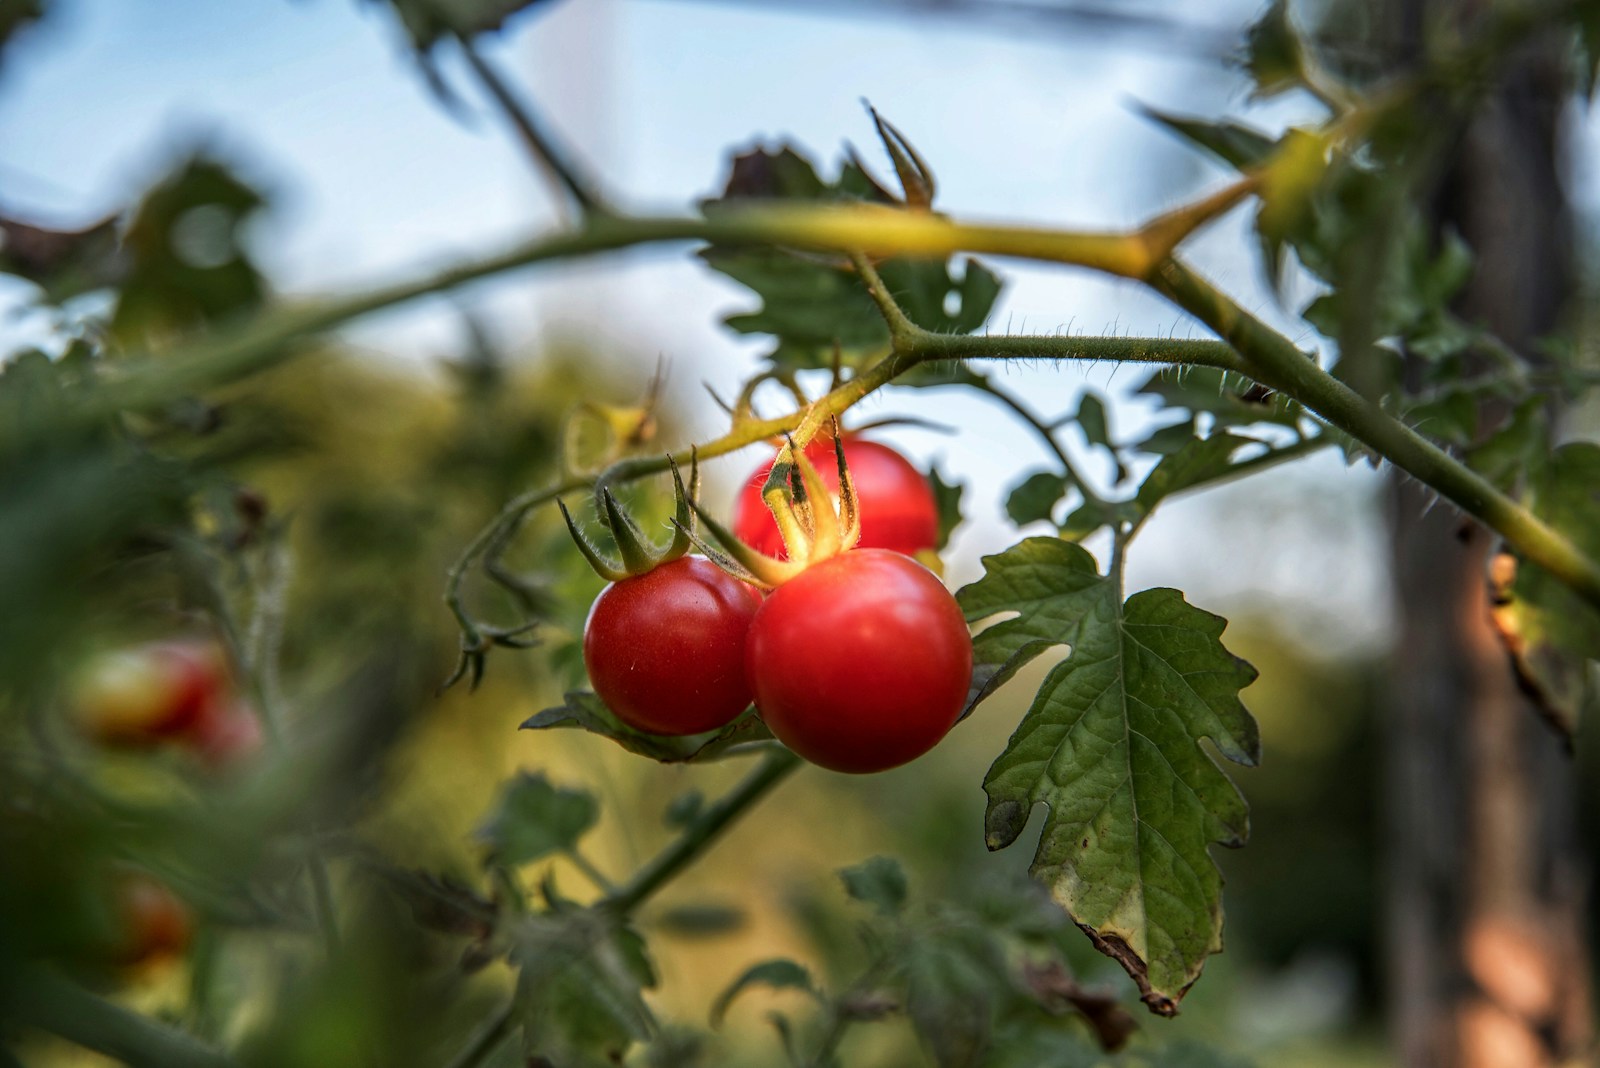 Pred výsadbou paradajok to hoďte do jamiek. Úroda bude veľmi bohatá